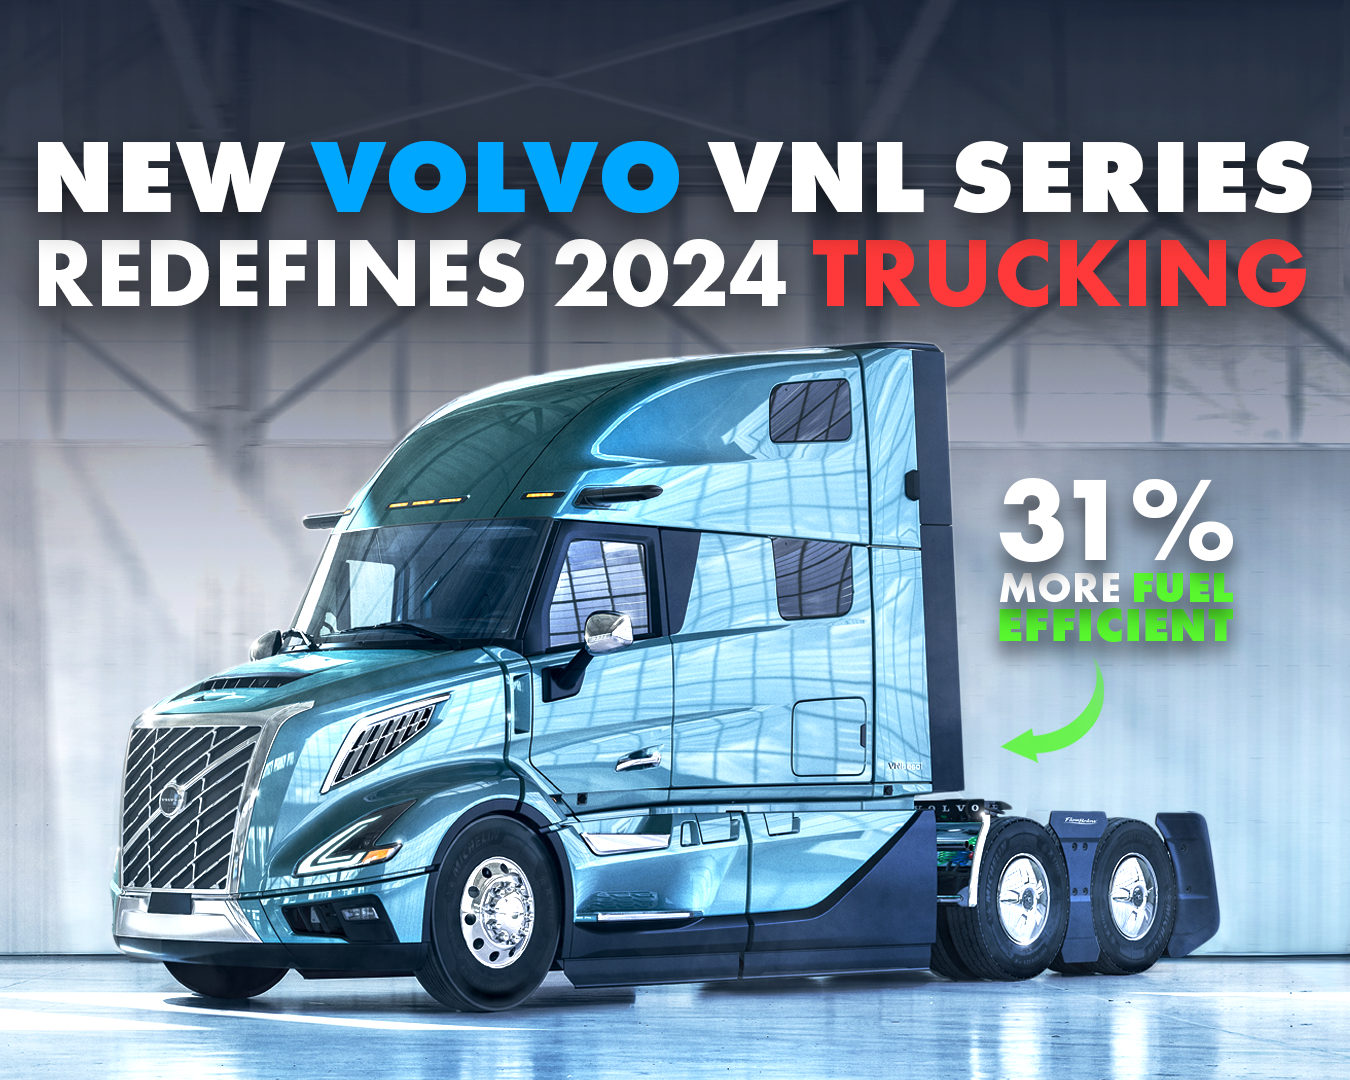 Volvo VNL Series – Redefines Trucking in 2024